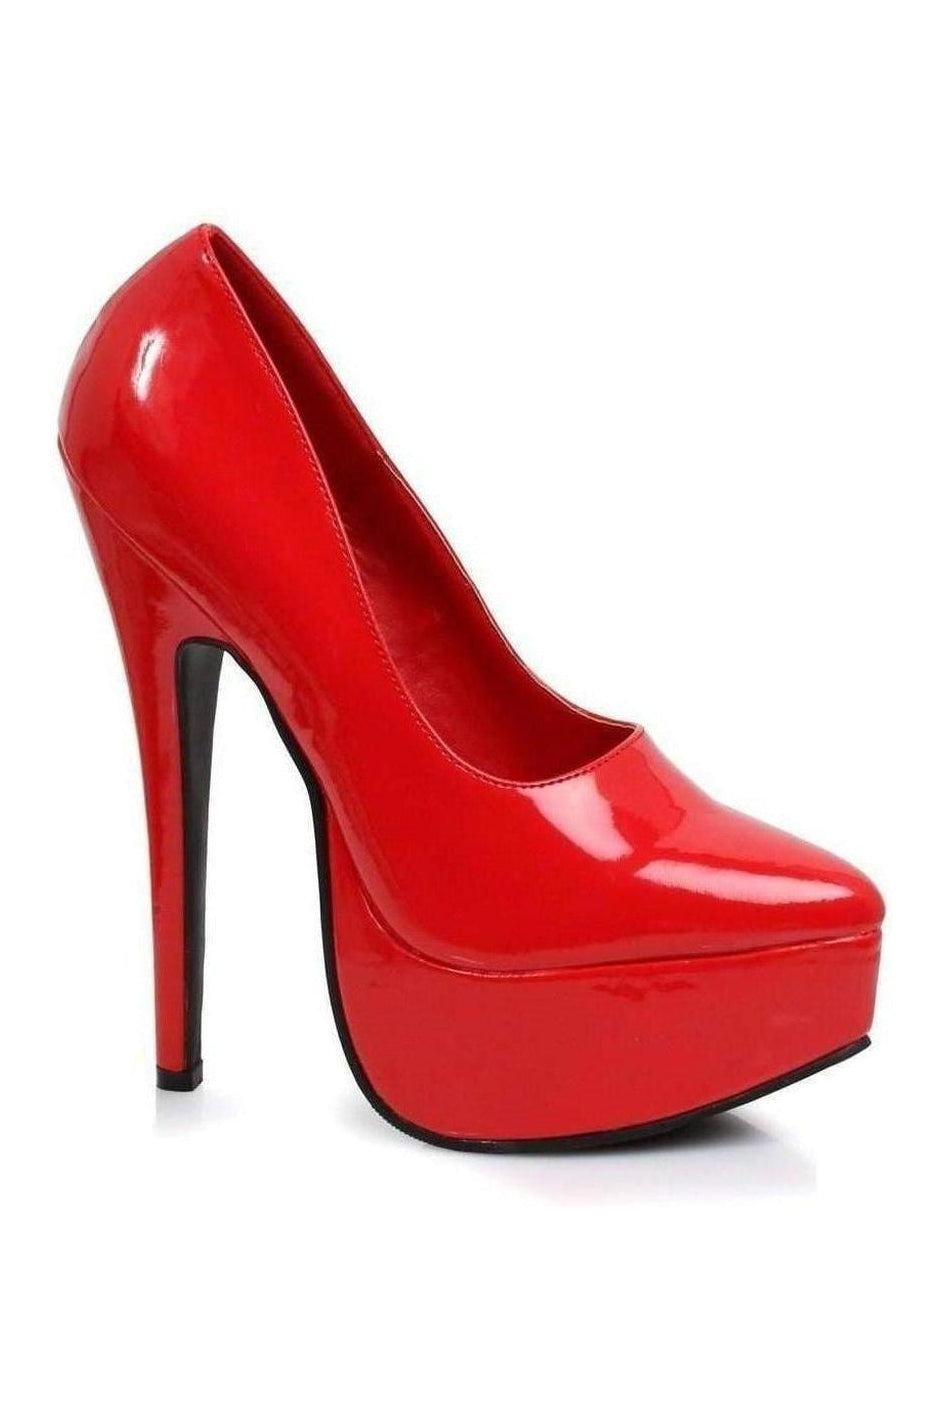 652-PRINCE Platform Pump | Red Patent-Ellie Shoes-SEXYSHOES.COM